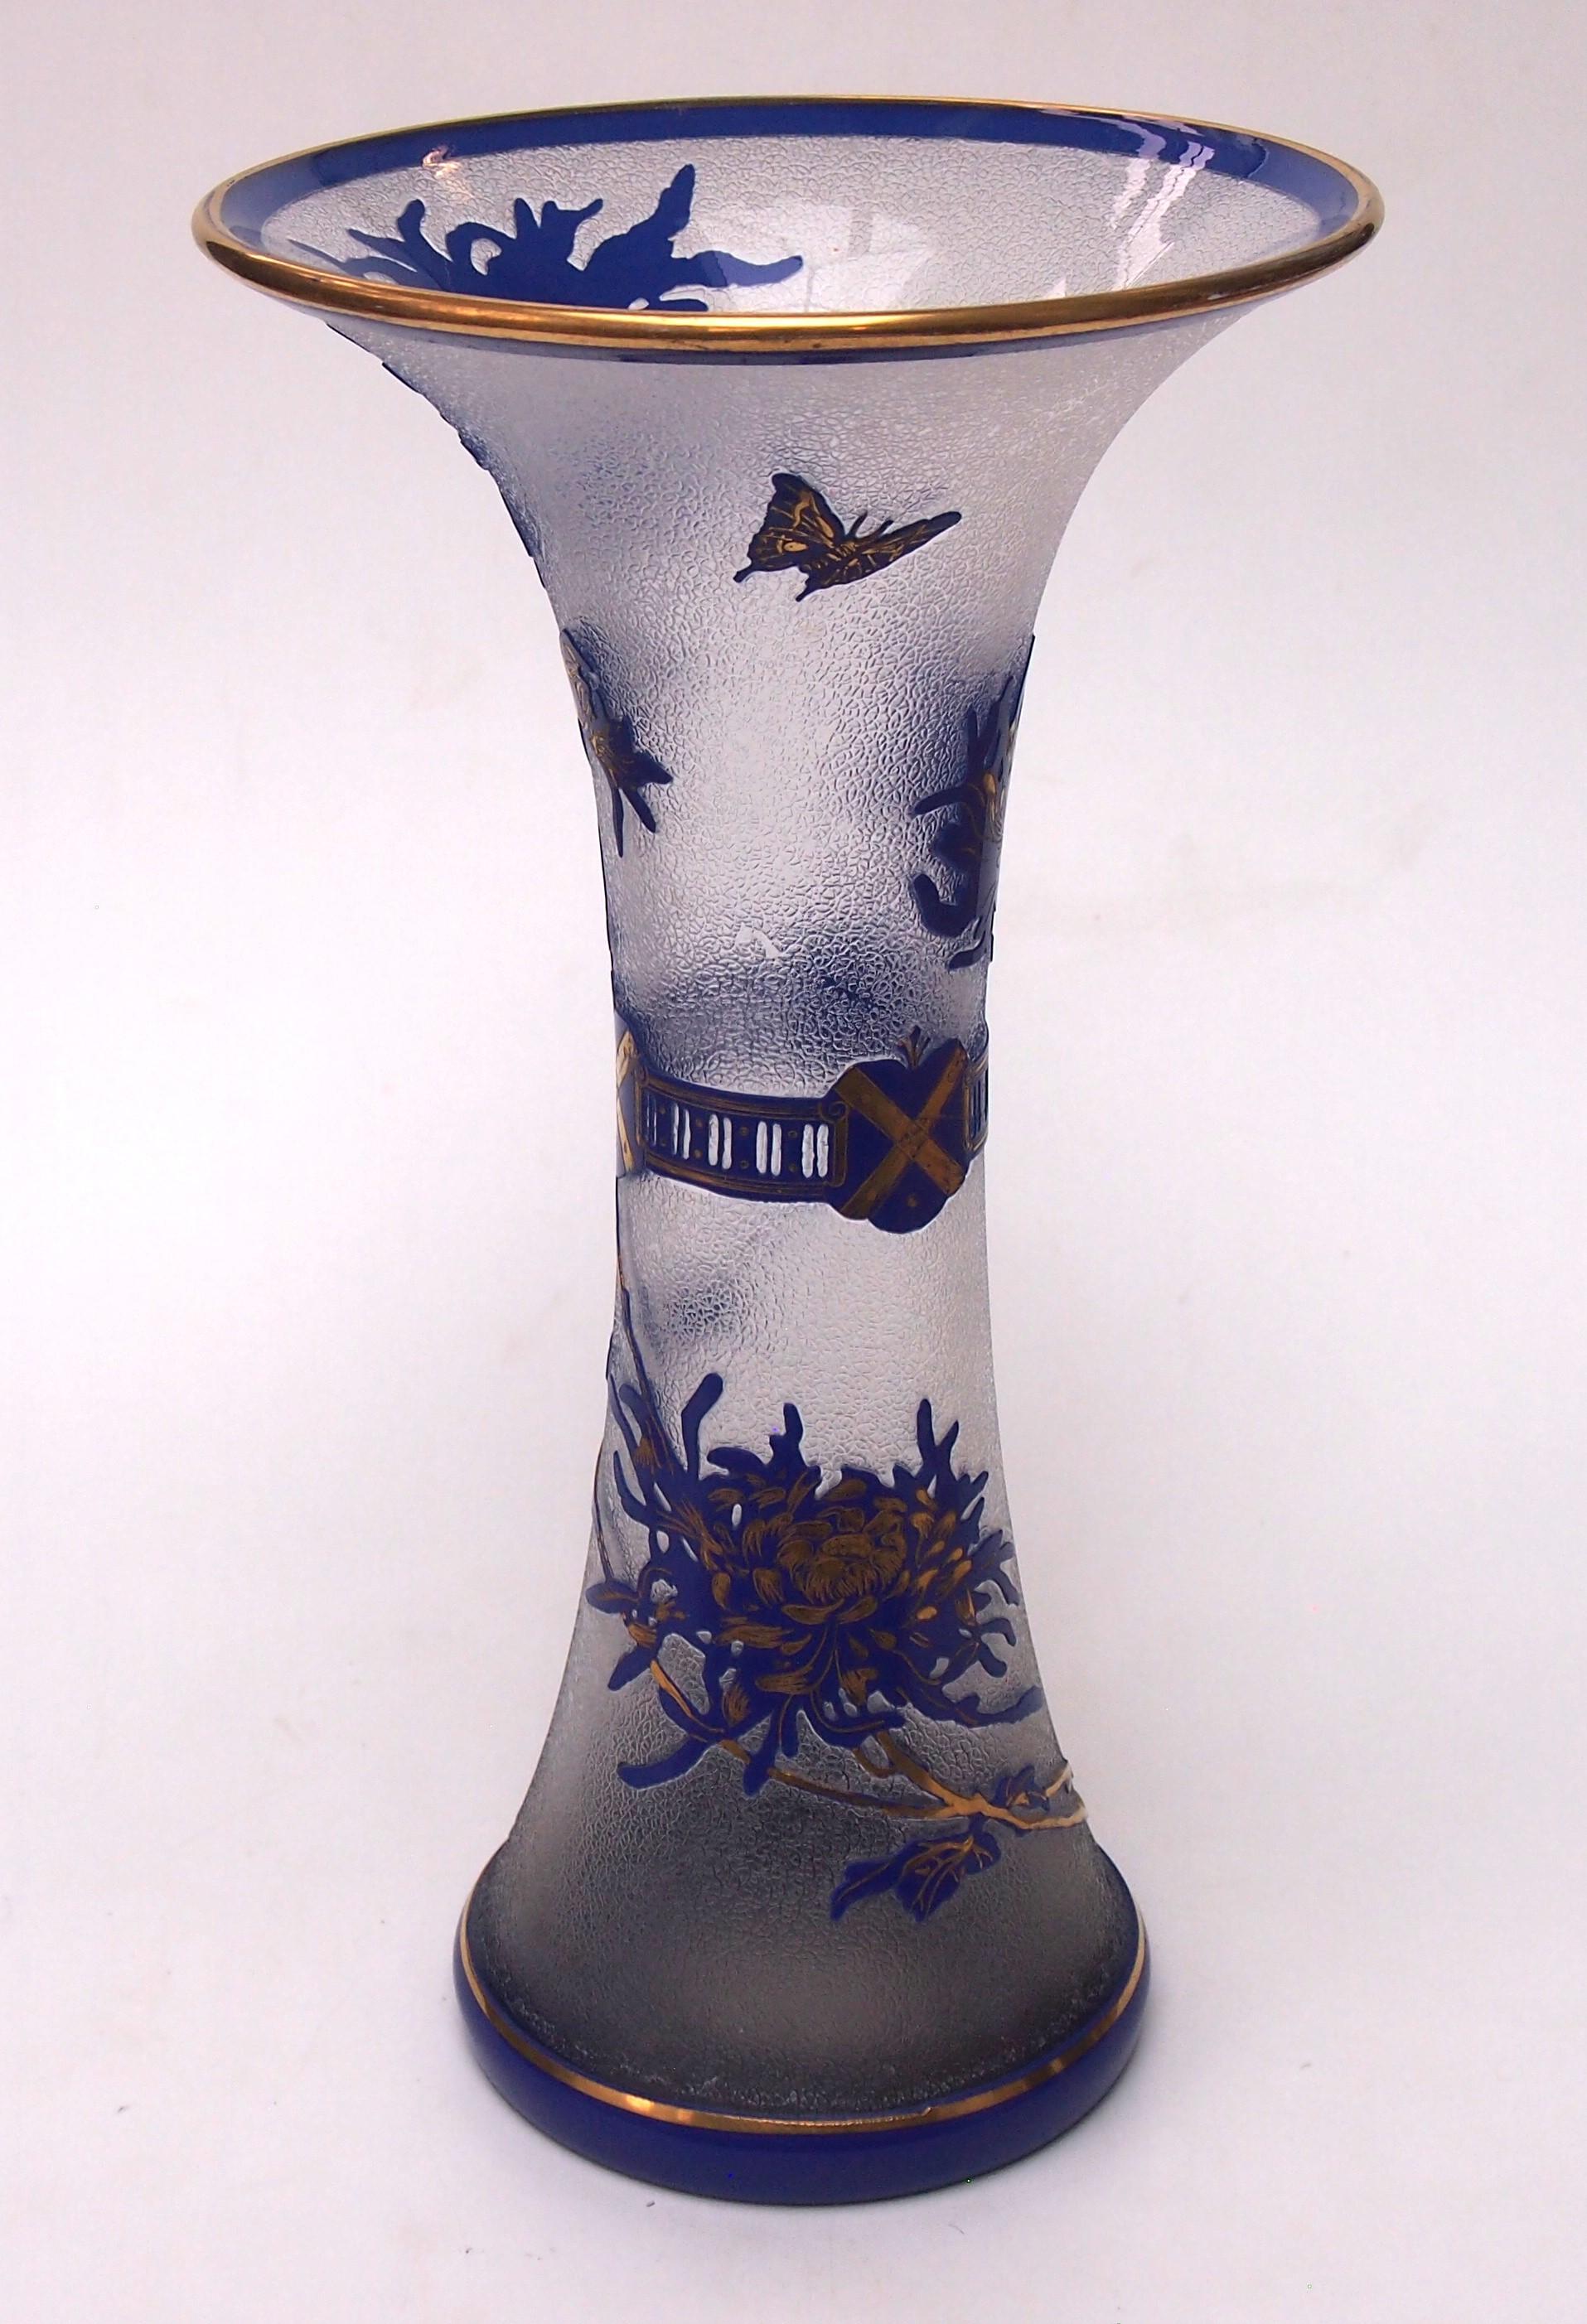 Superbe vase en cristal de Saint Louis Crystal Works de France, taillé dans un bleu foncé vibrant, avec un fond givré. L'image représente un mélange d'images héraldiques (autour du centre) et une scène botanique avec des chrysanthèmes en fleurs